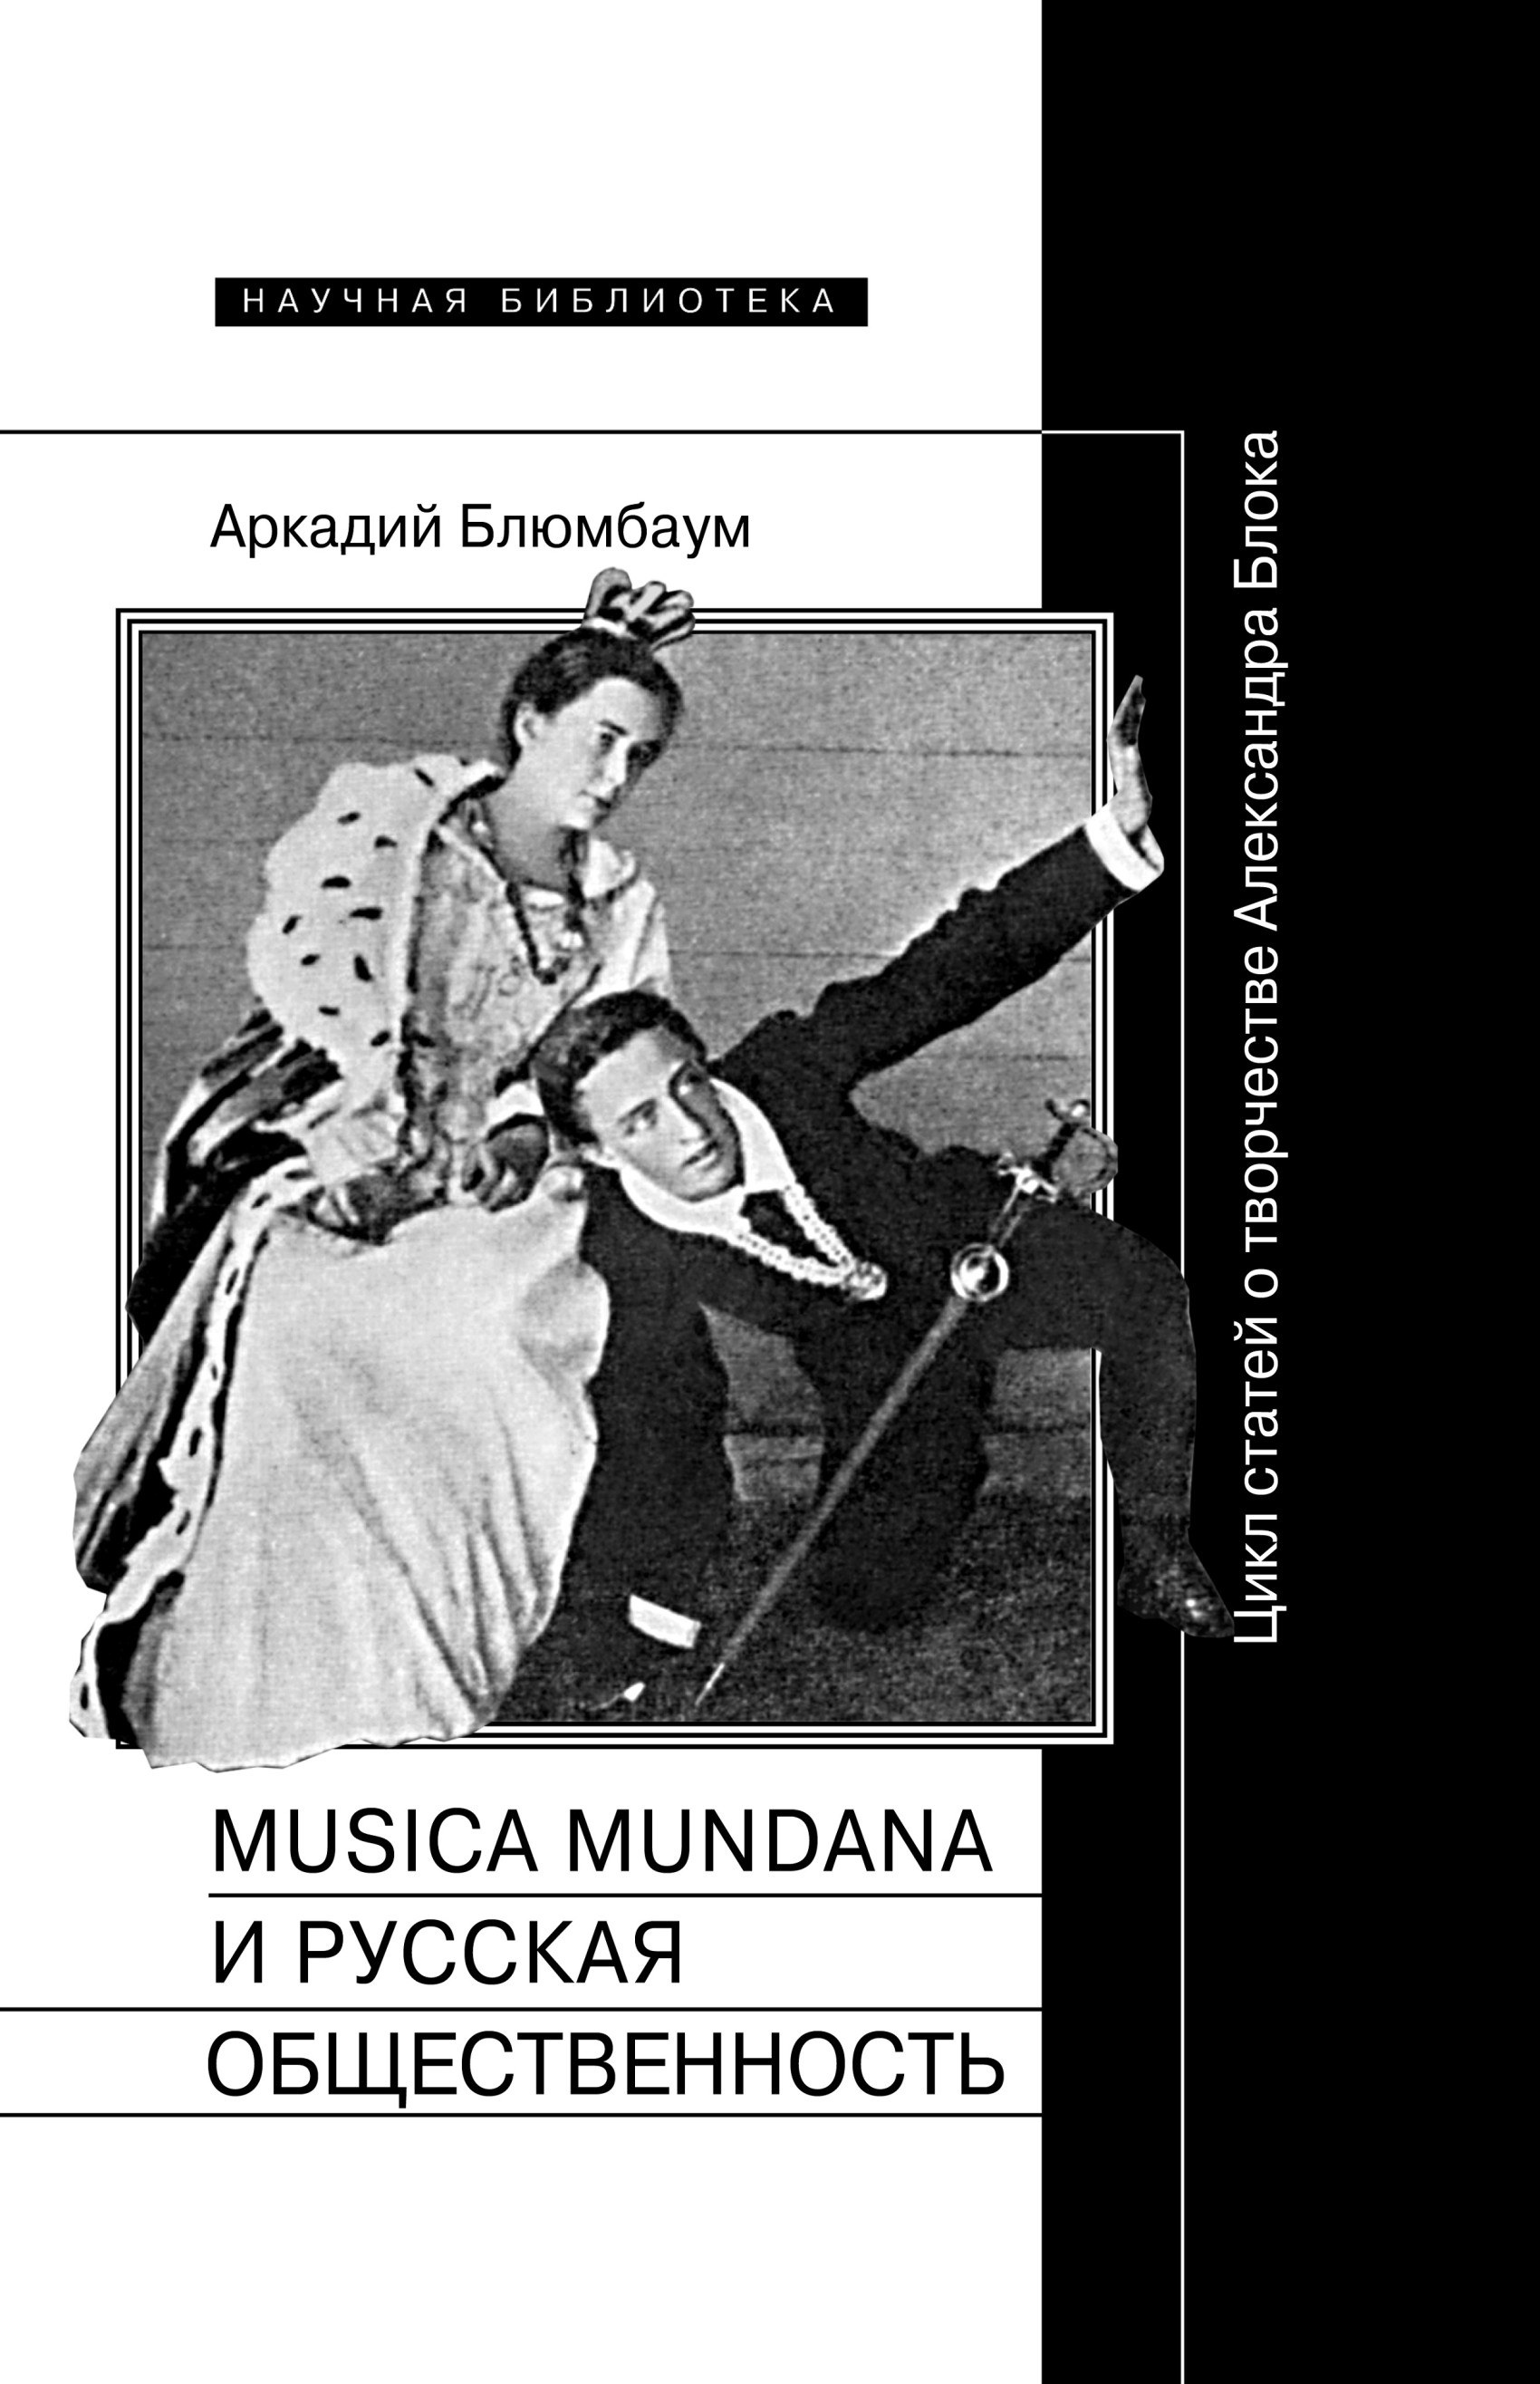 Musica mundanaи русская общественность. Цикл статей о творчестве Александра Блока